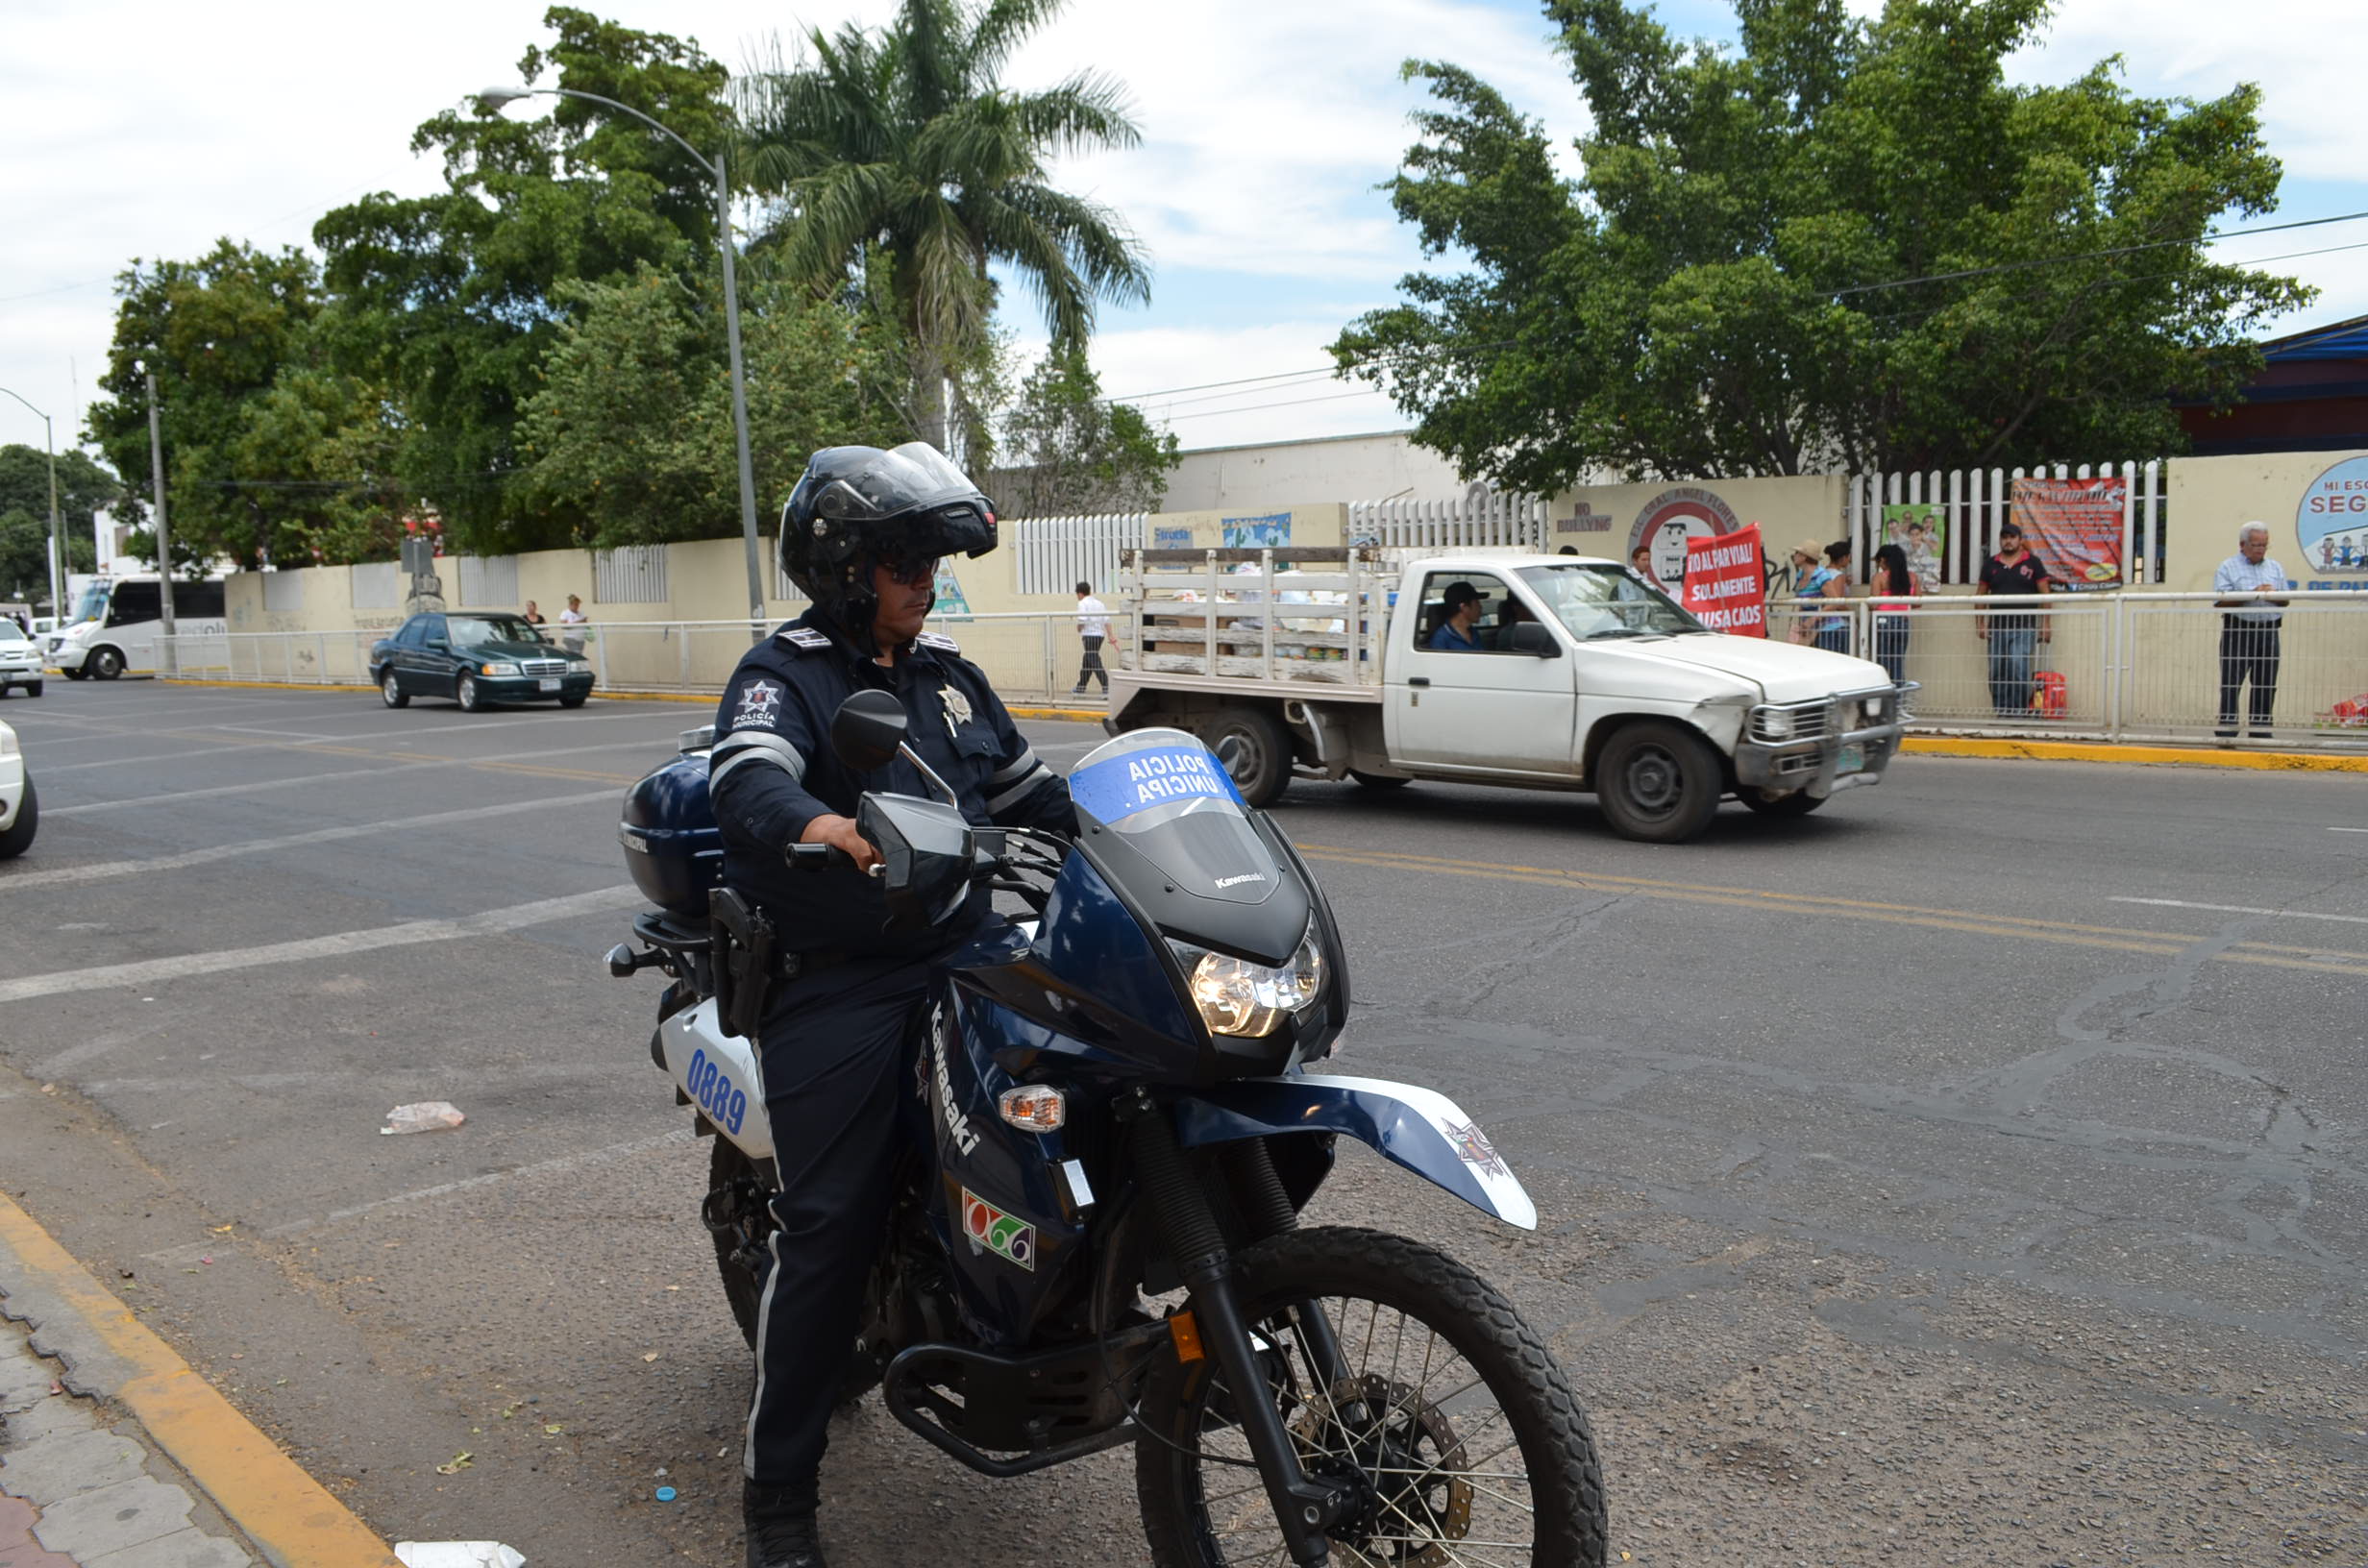 Aparece agente de tránsito para ayudar a los ciudadanos a cruzar aunque la protesta prosigue. Fotografía Gabriela Sánchez